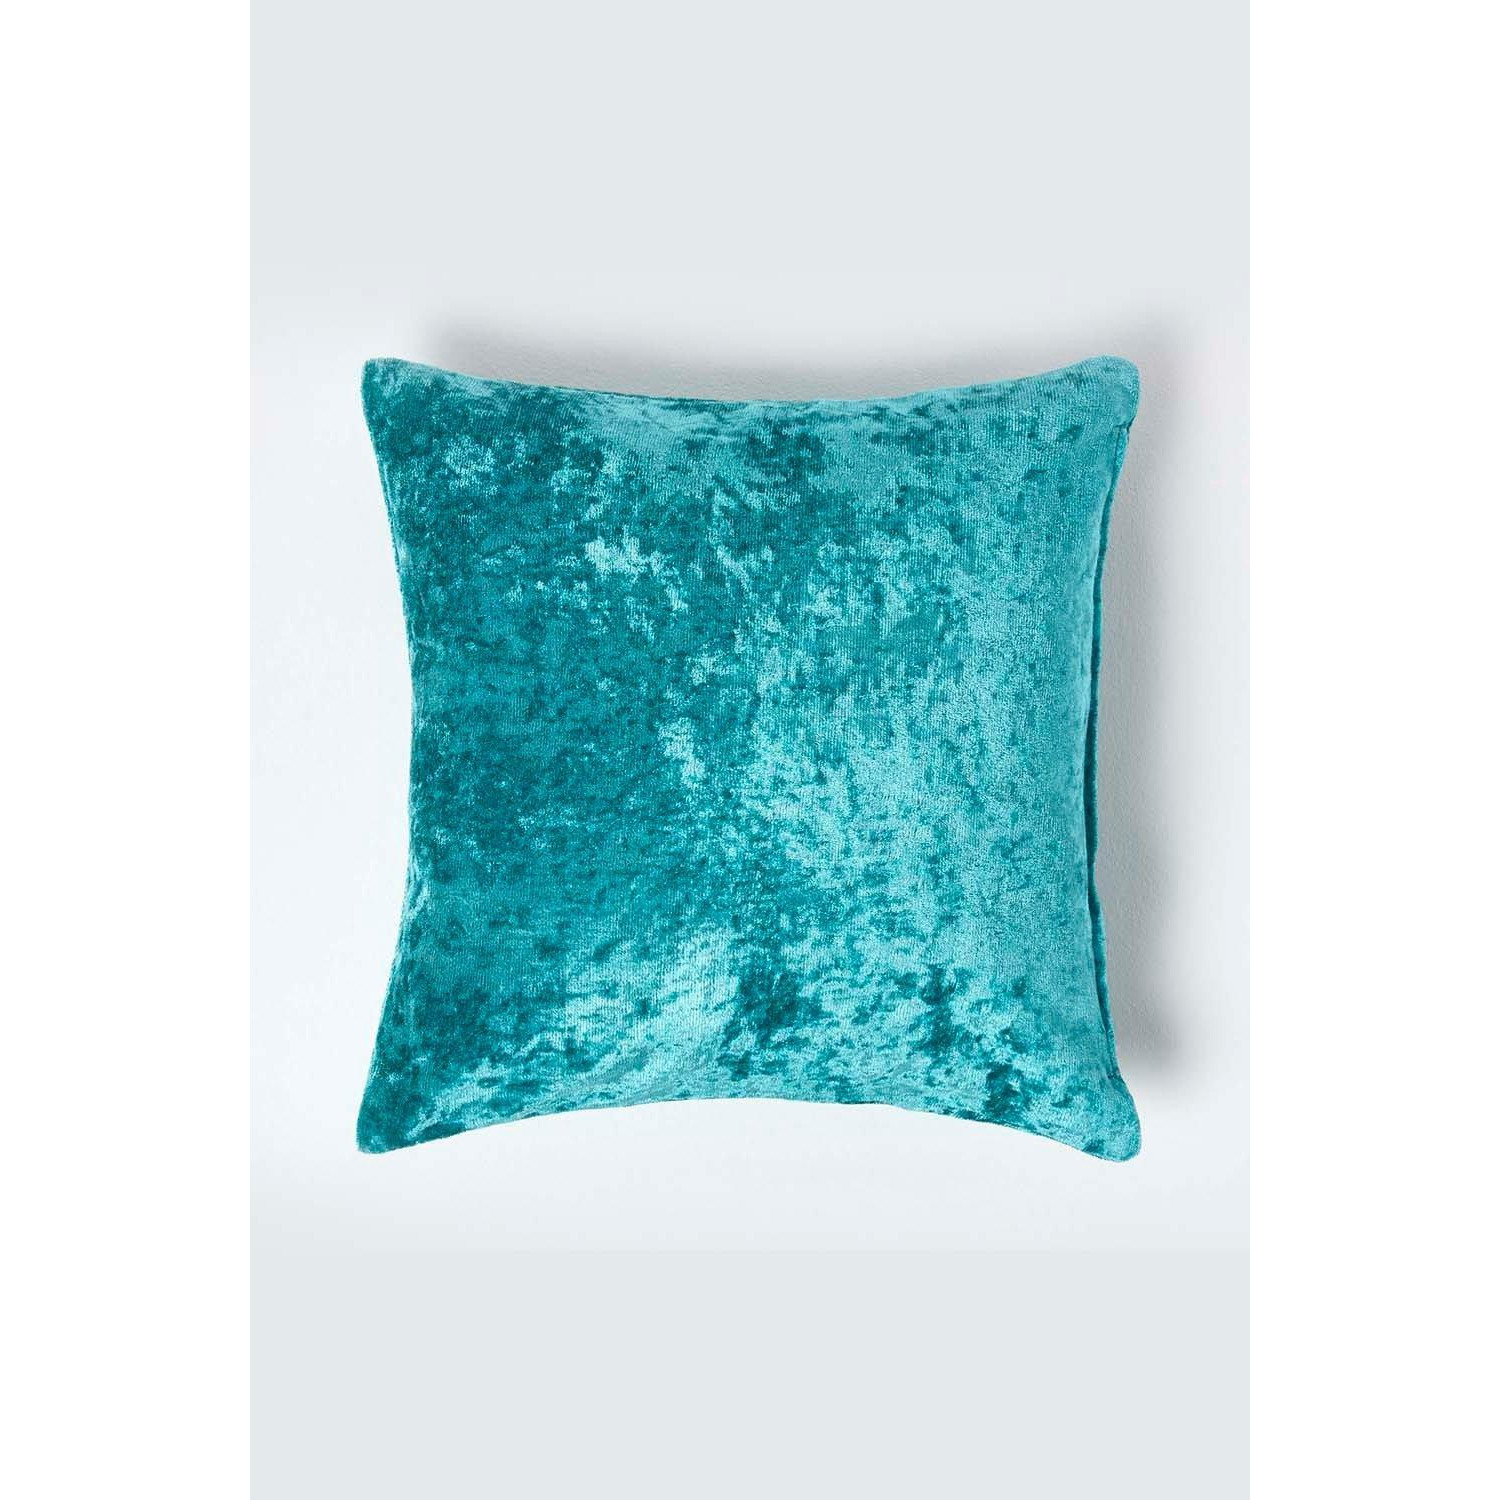 Luxury Crushed Velvet Cushion Cover - image 1